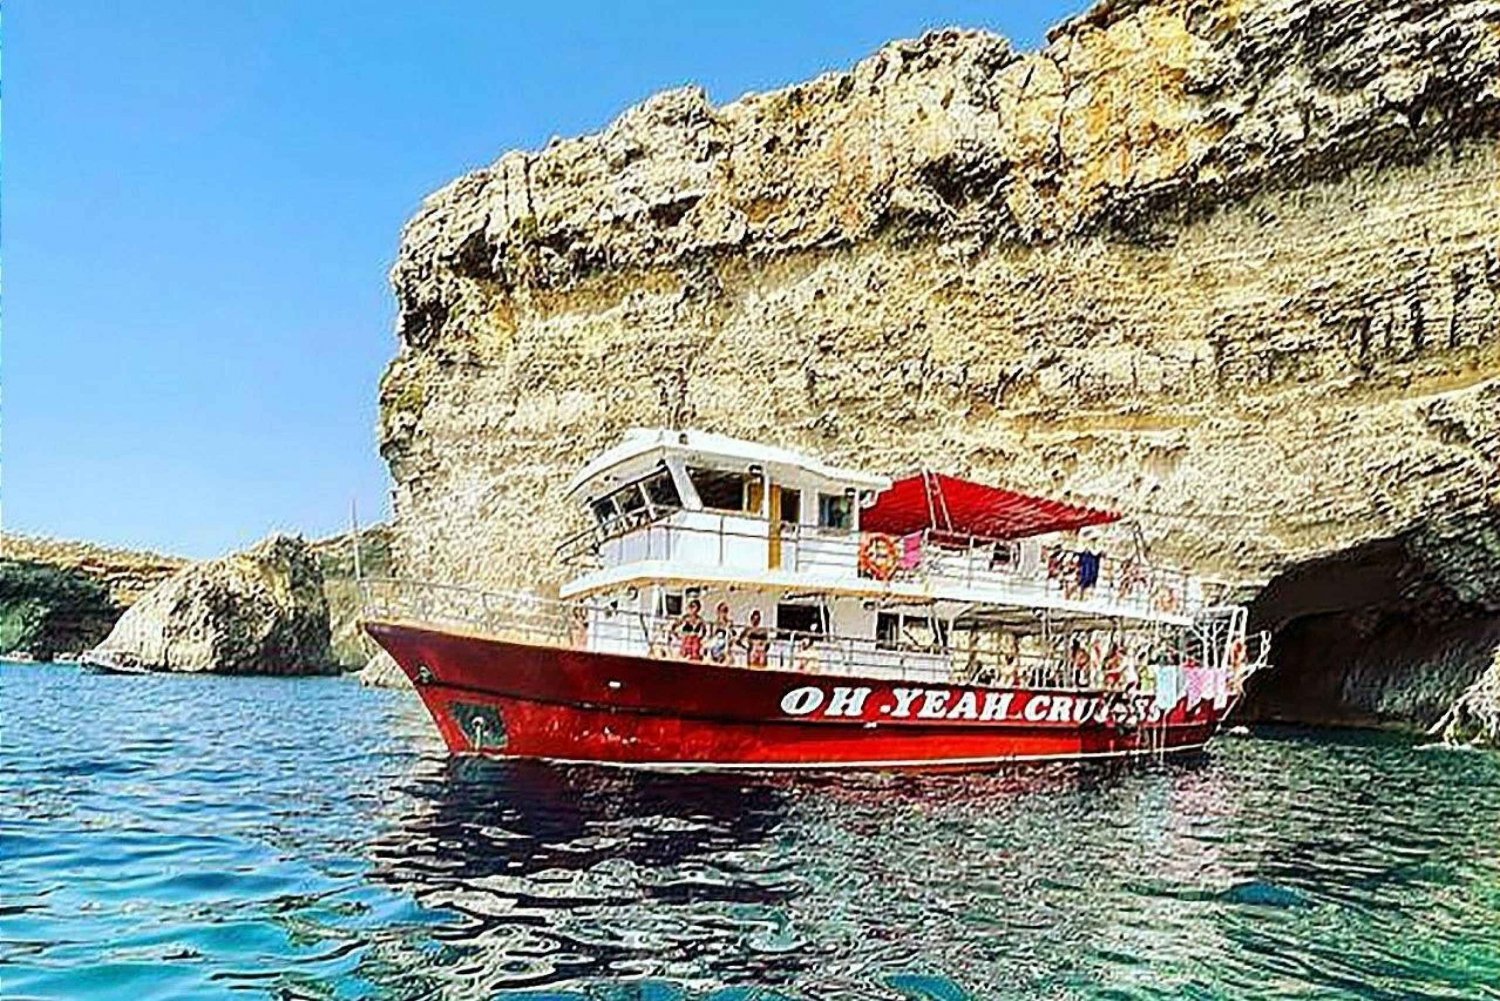 Baía de Mellieħa: Malta, Gozo e Comino: passeio de barco com parada para nadar